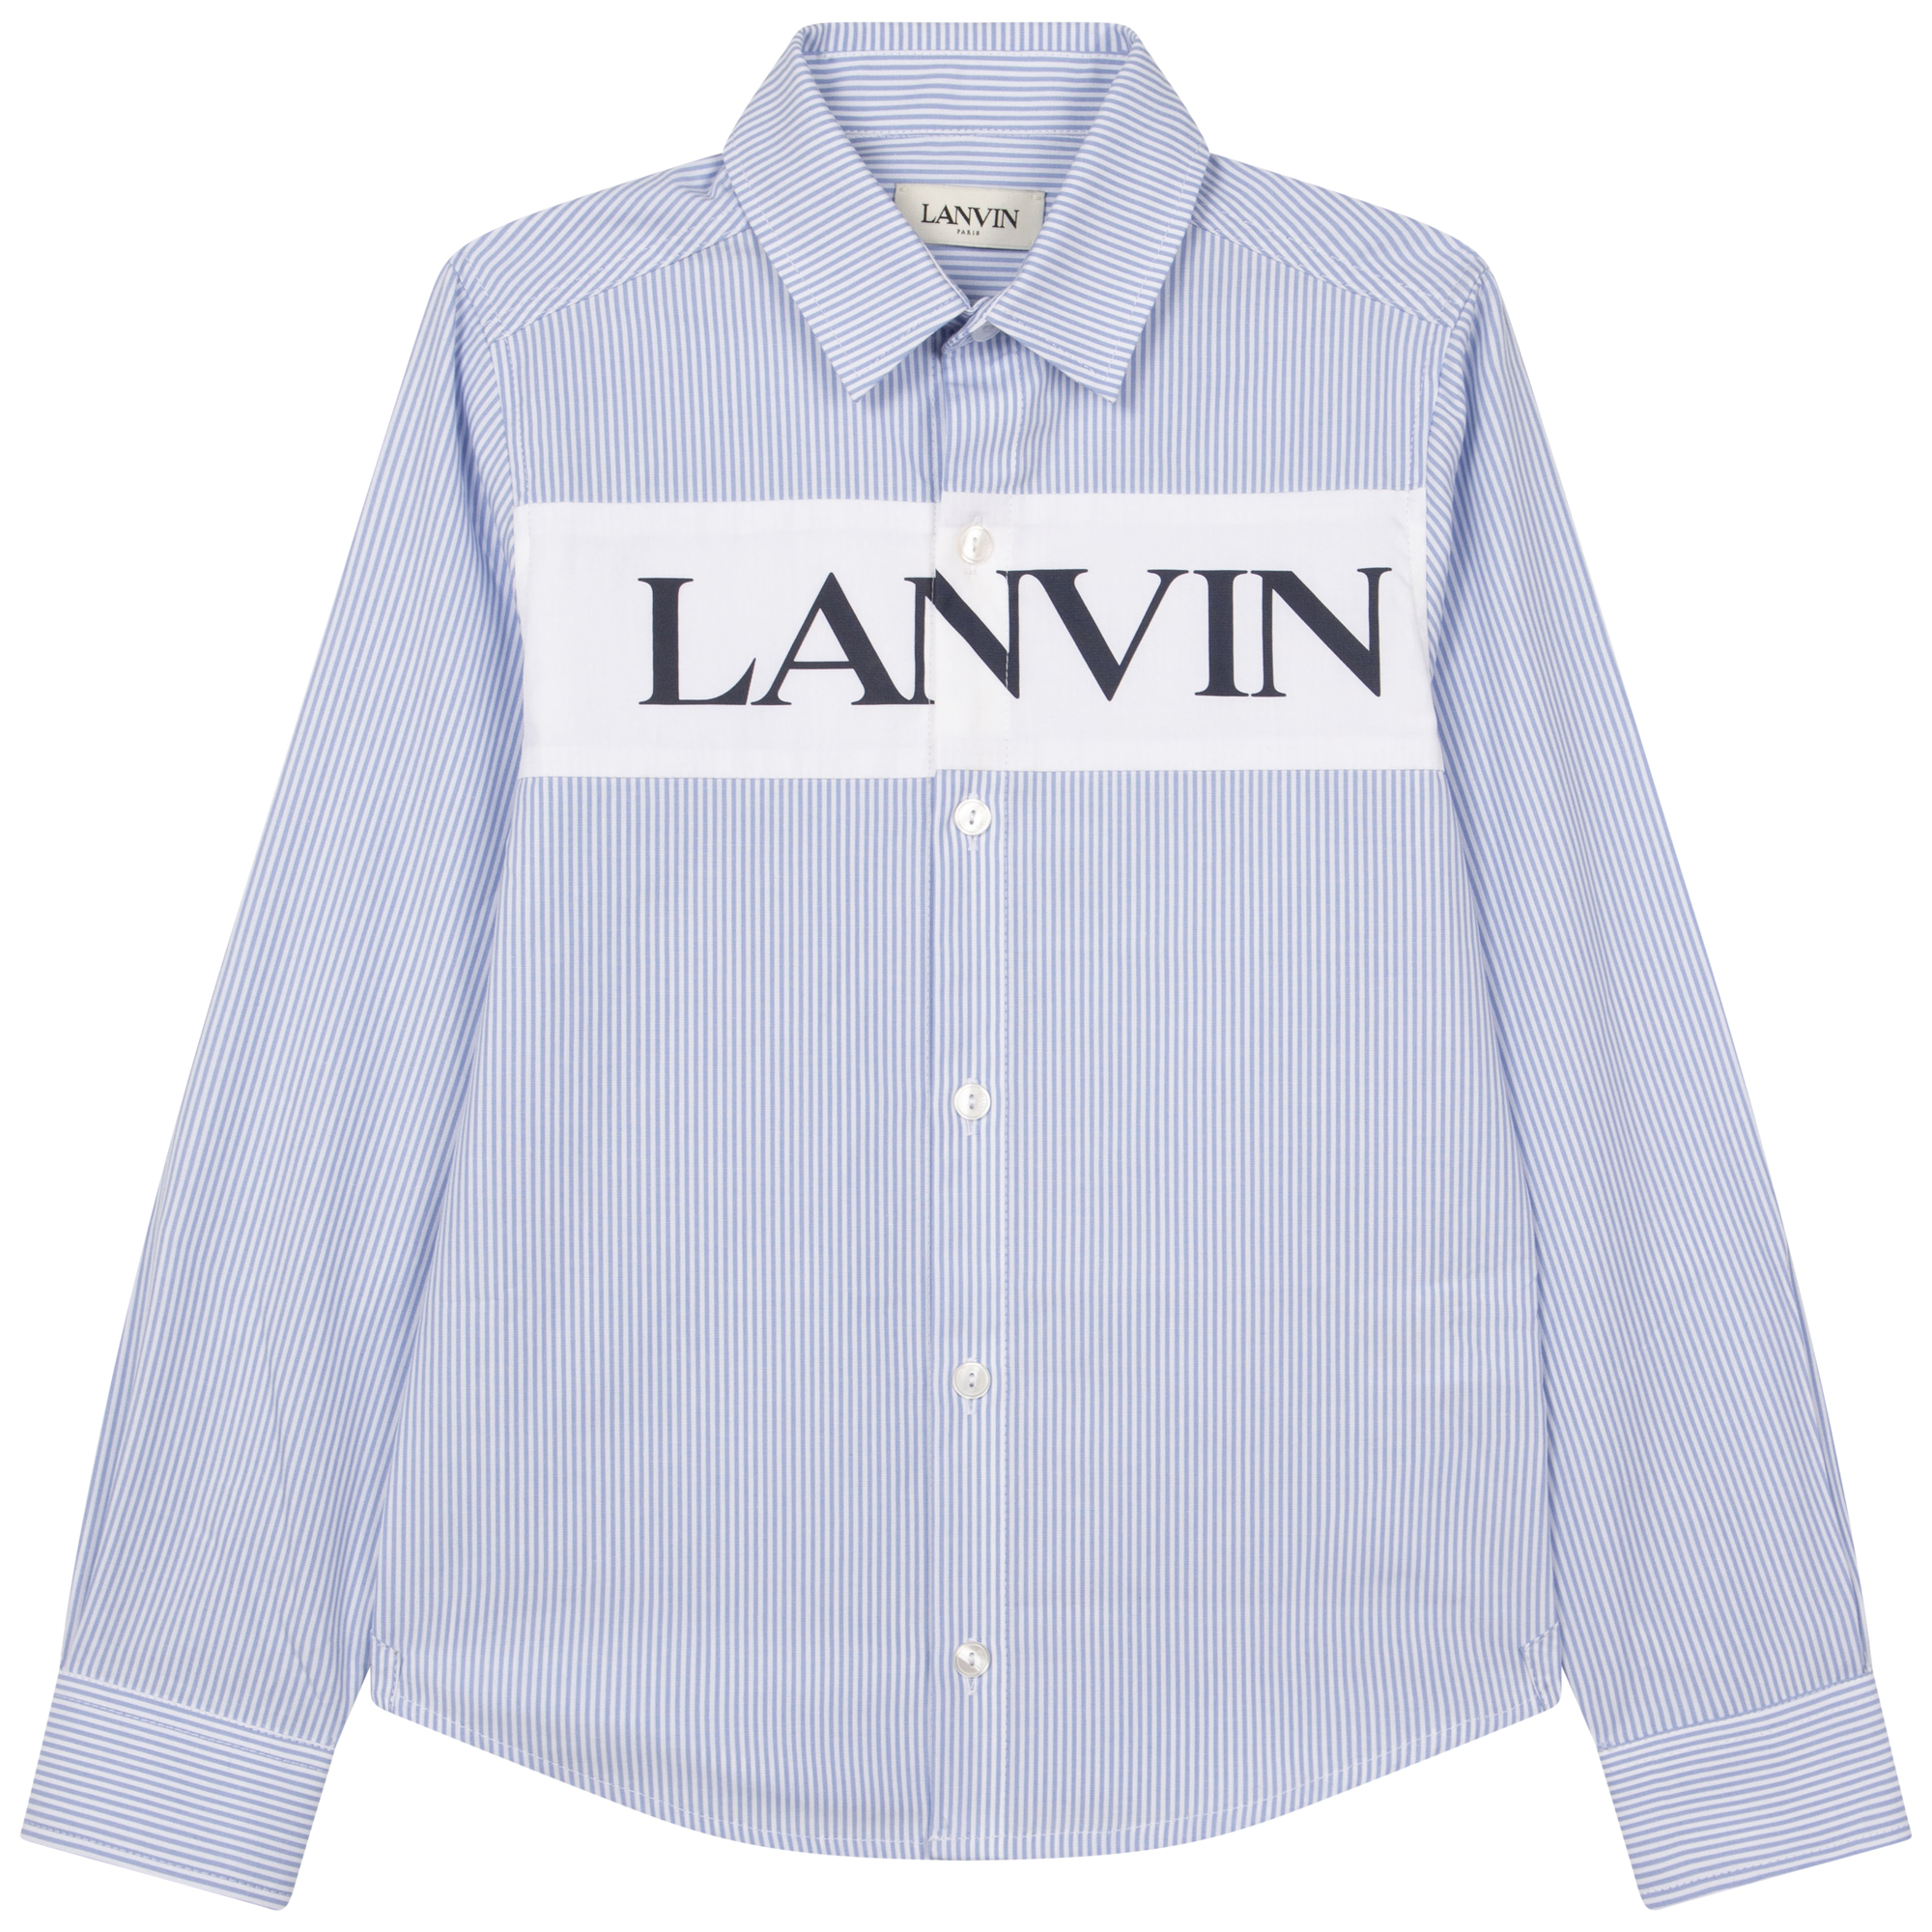 Striped shirt LANVIN for BOY